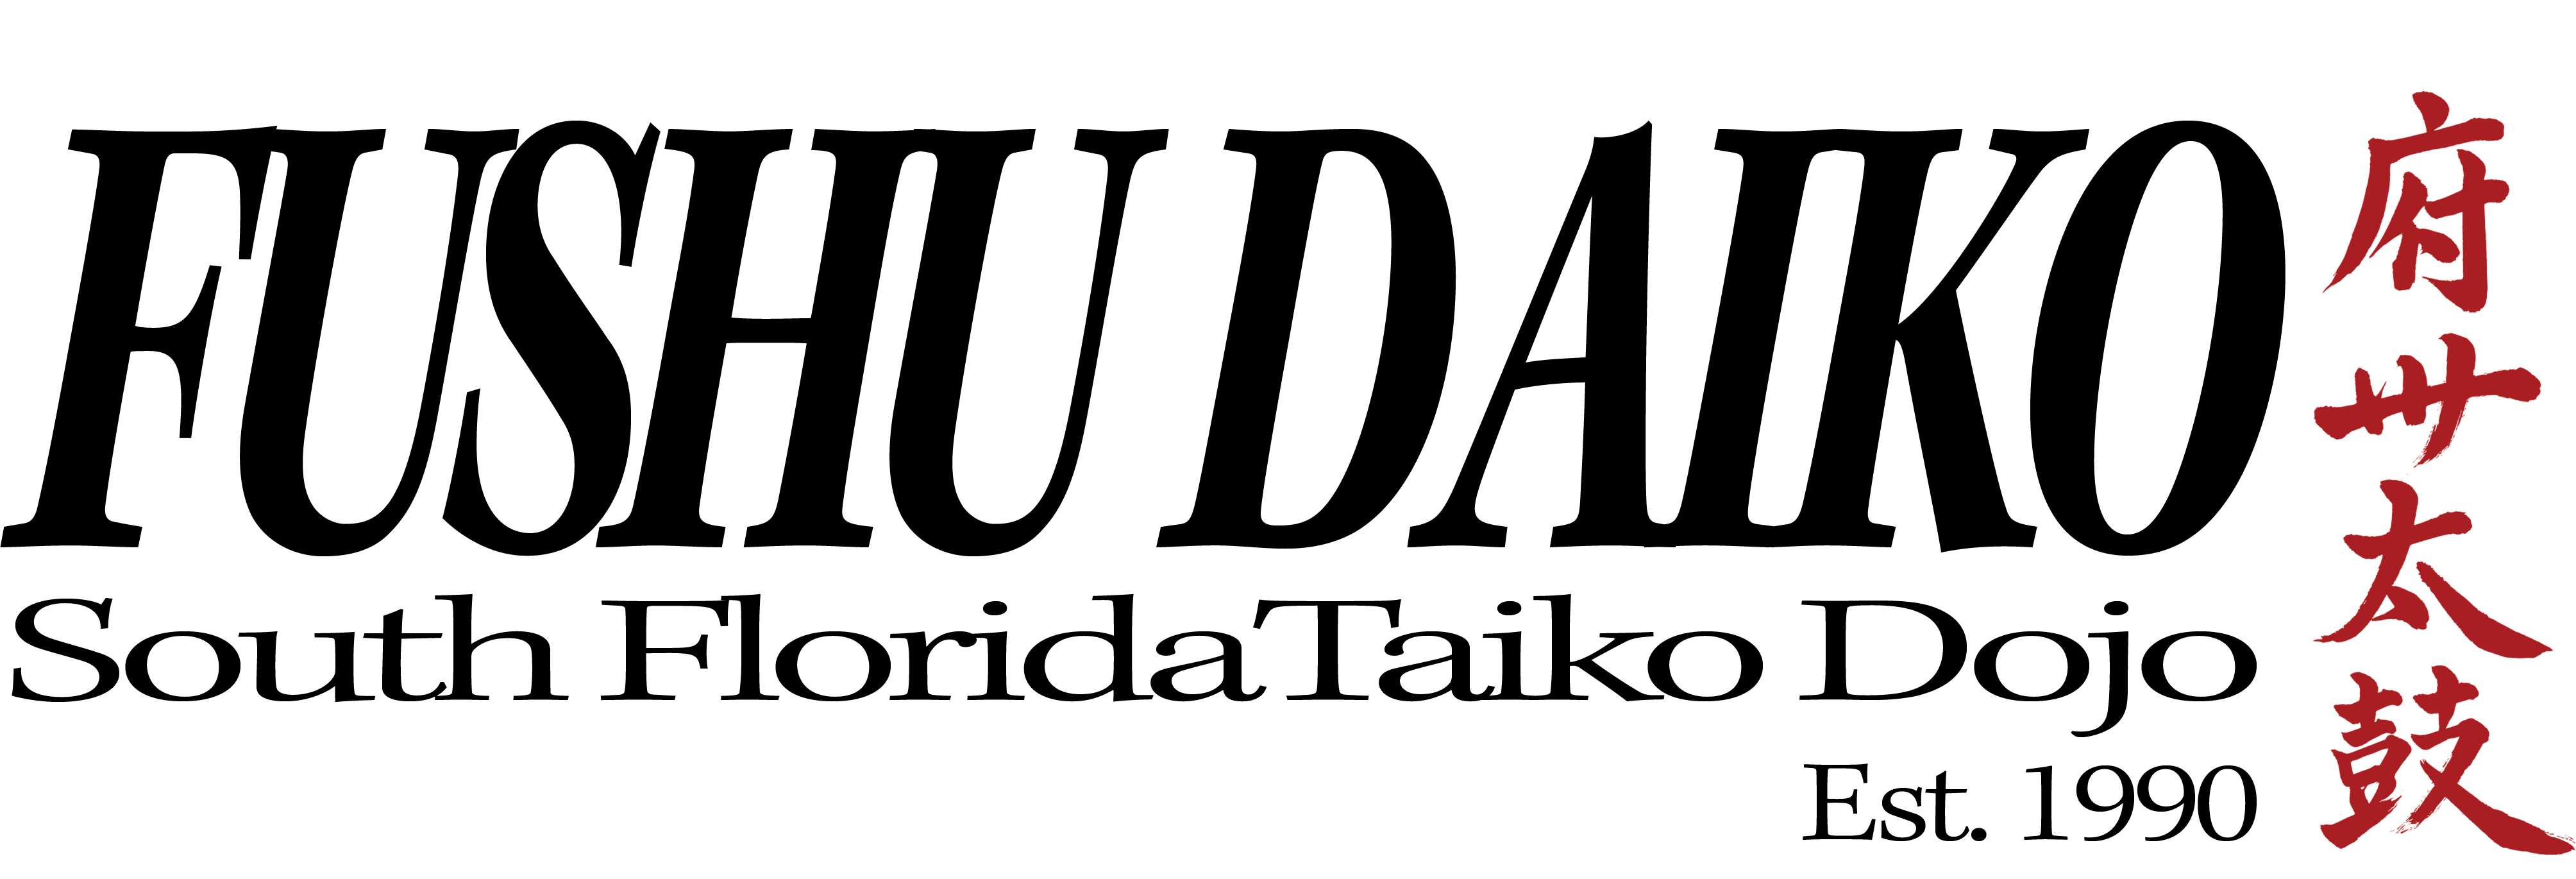 FushuDaiko Logo